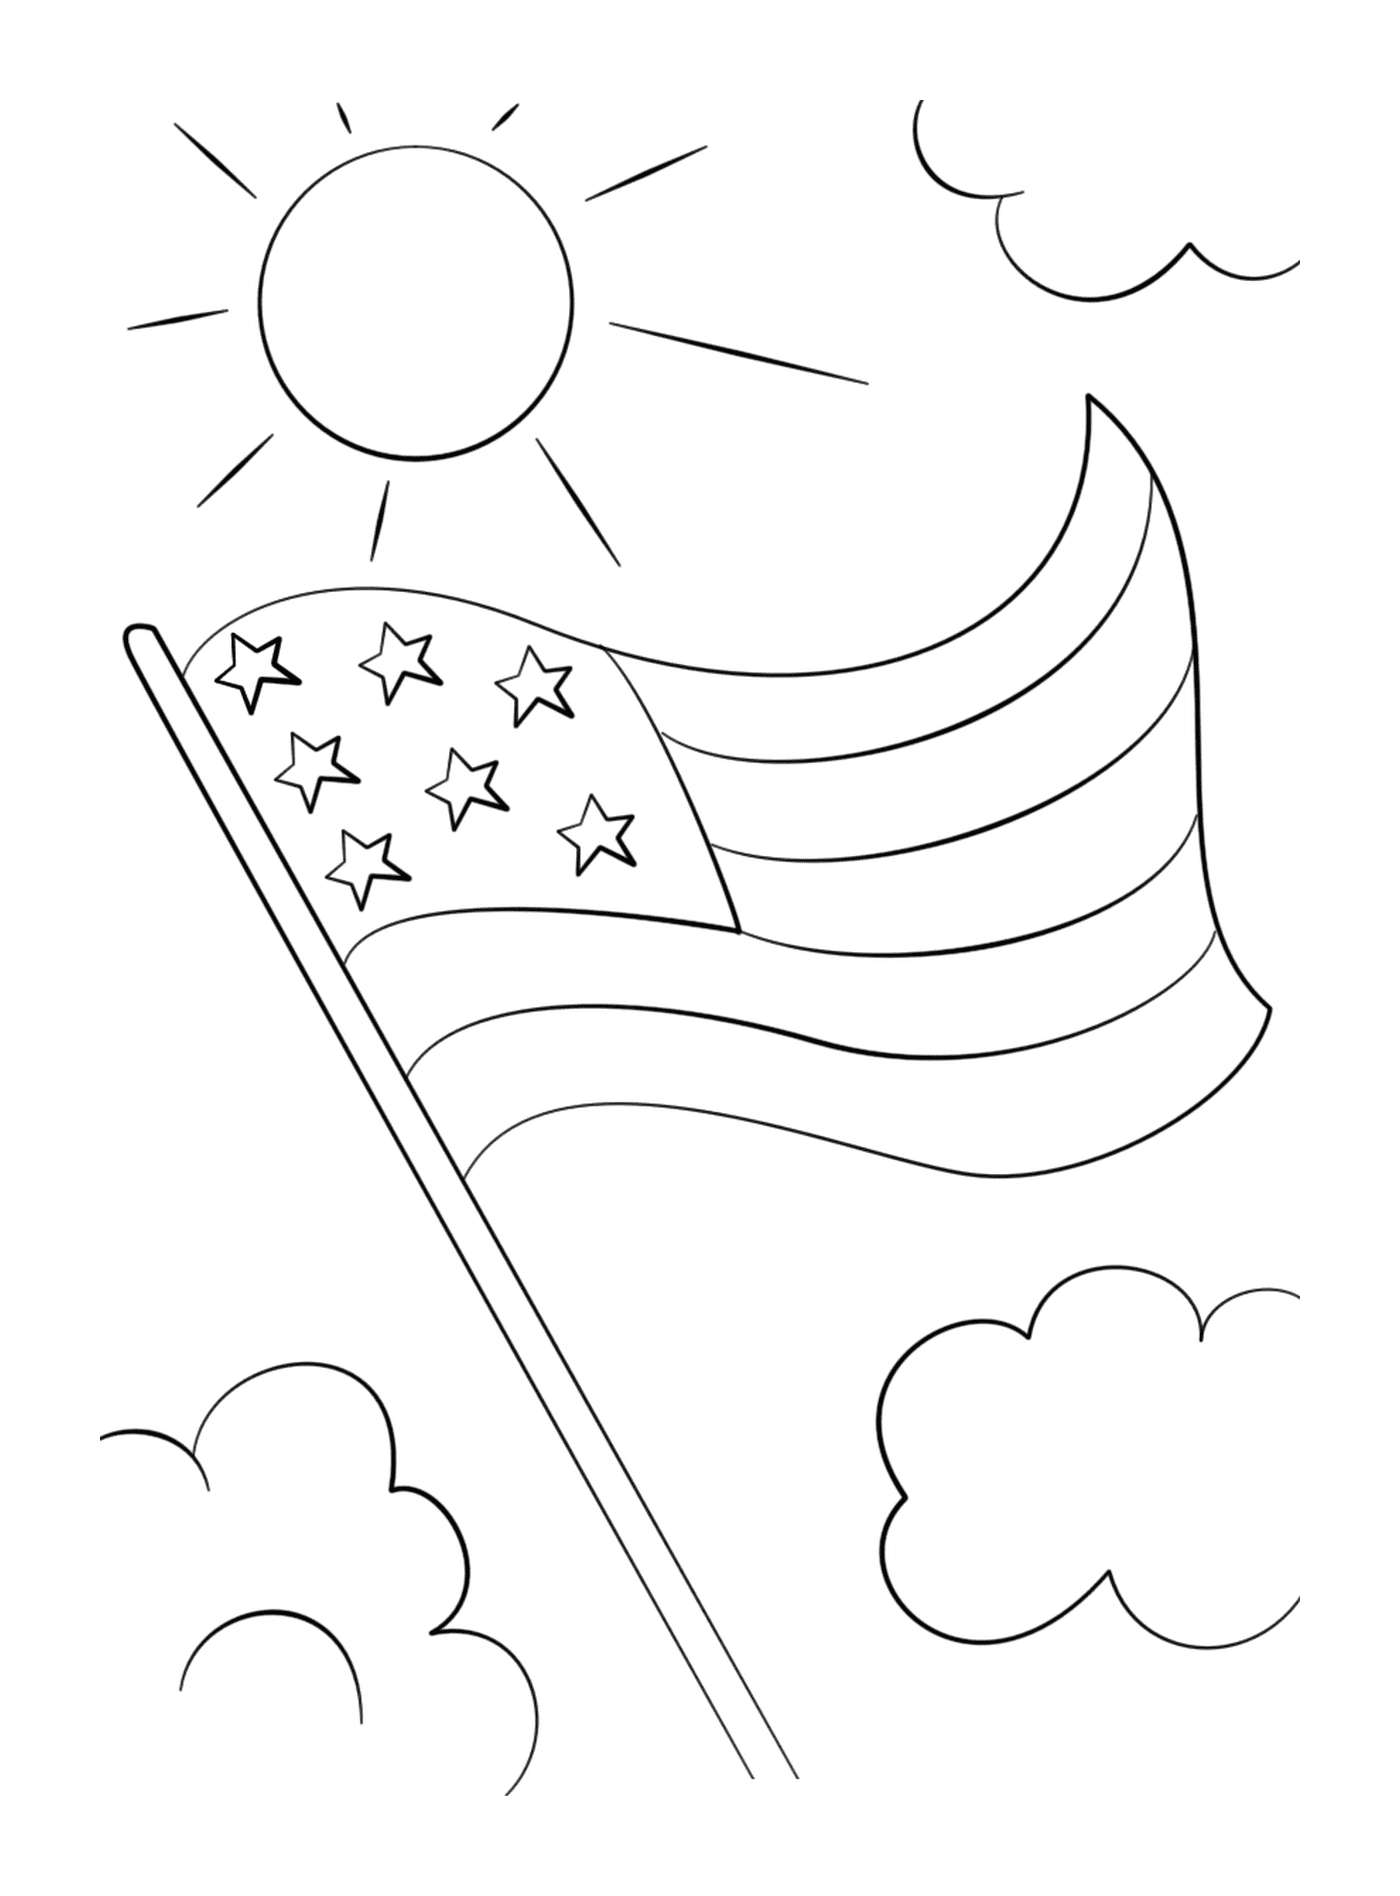  Amerikanische Flagge mit Sternen, die am Himmel schweben 